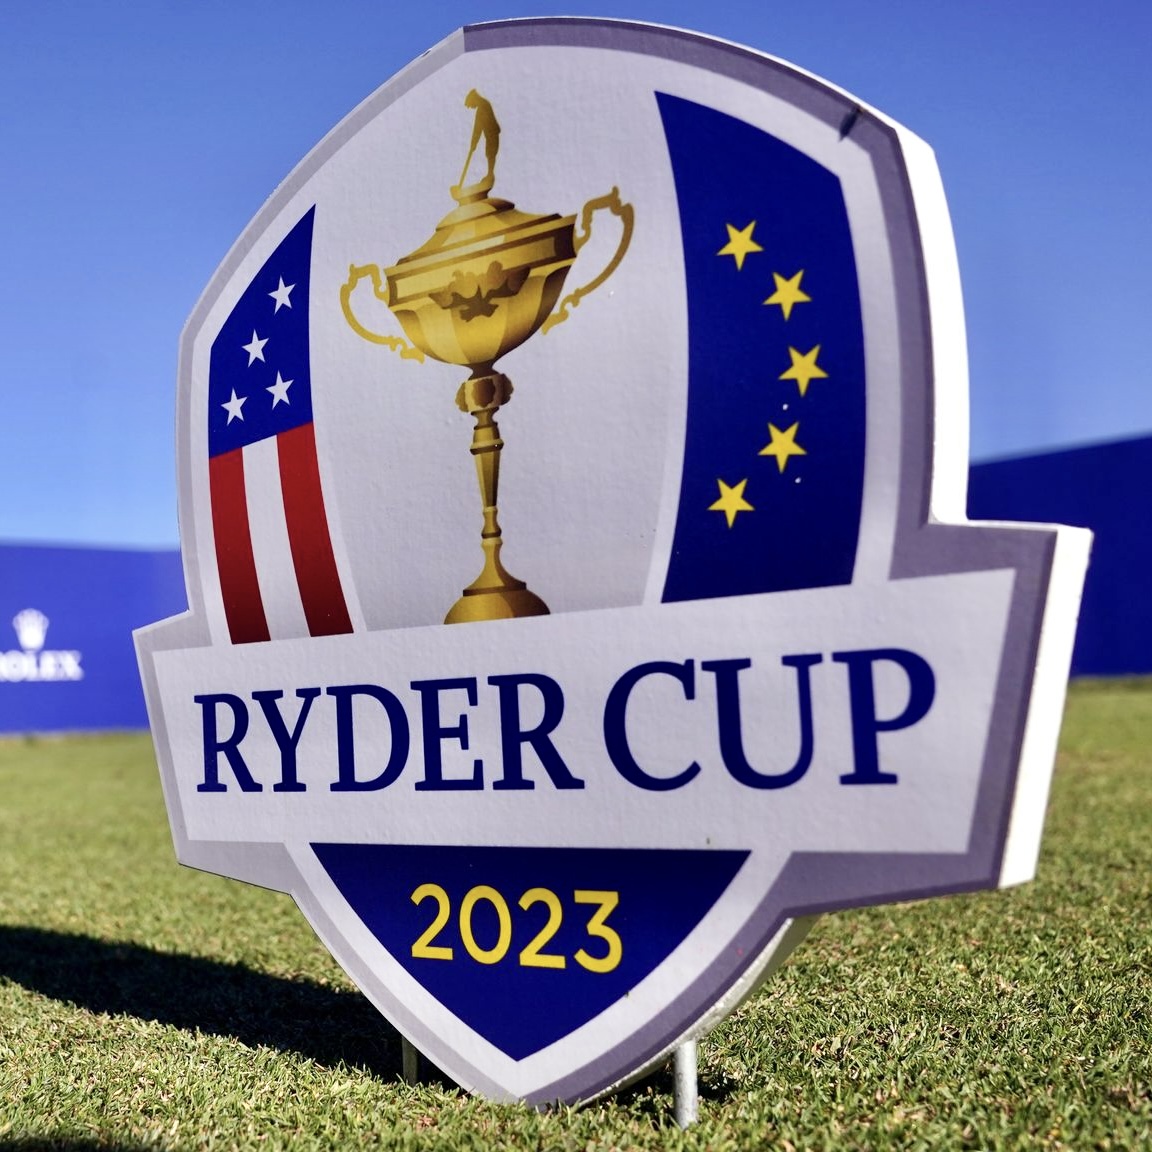 Ryder Cup 2023 - Jason Floyd Golf Academy blog